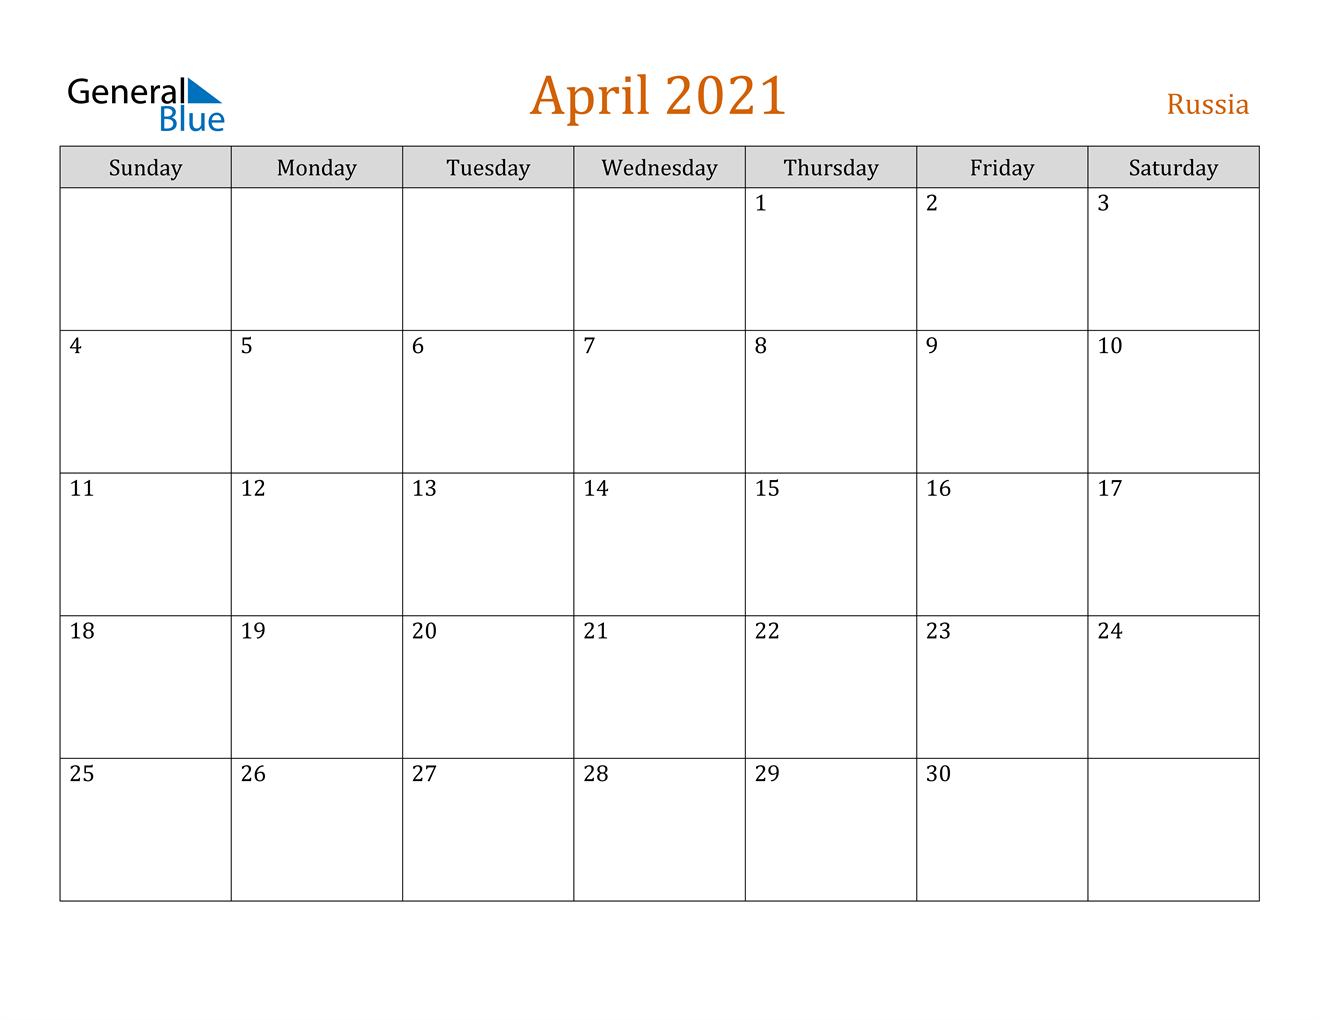 April 2021 Calendar - Russia